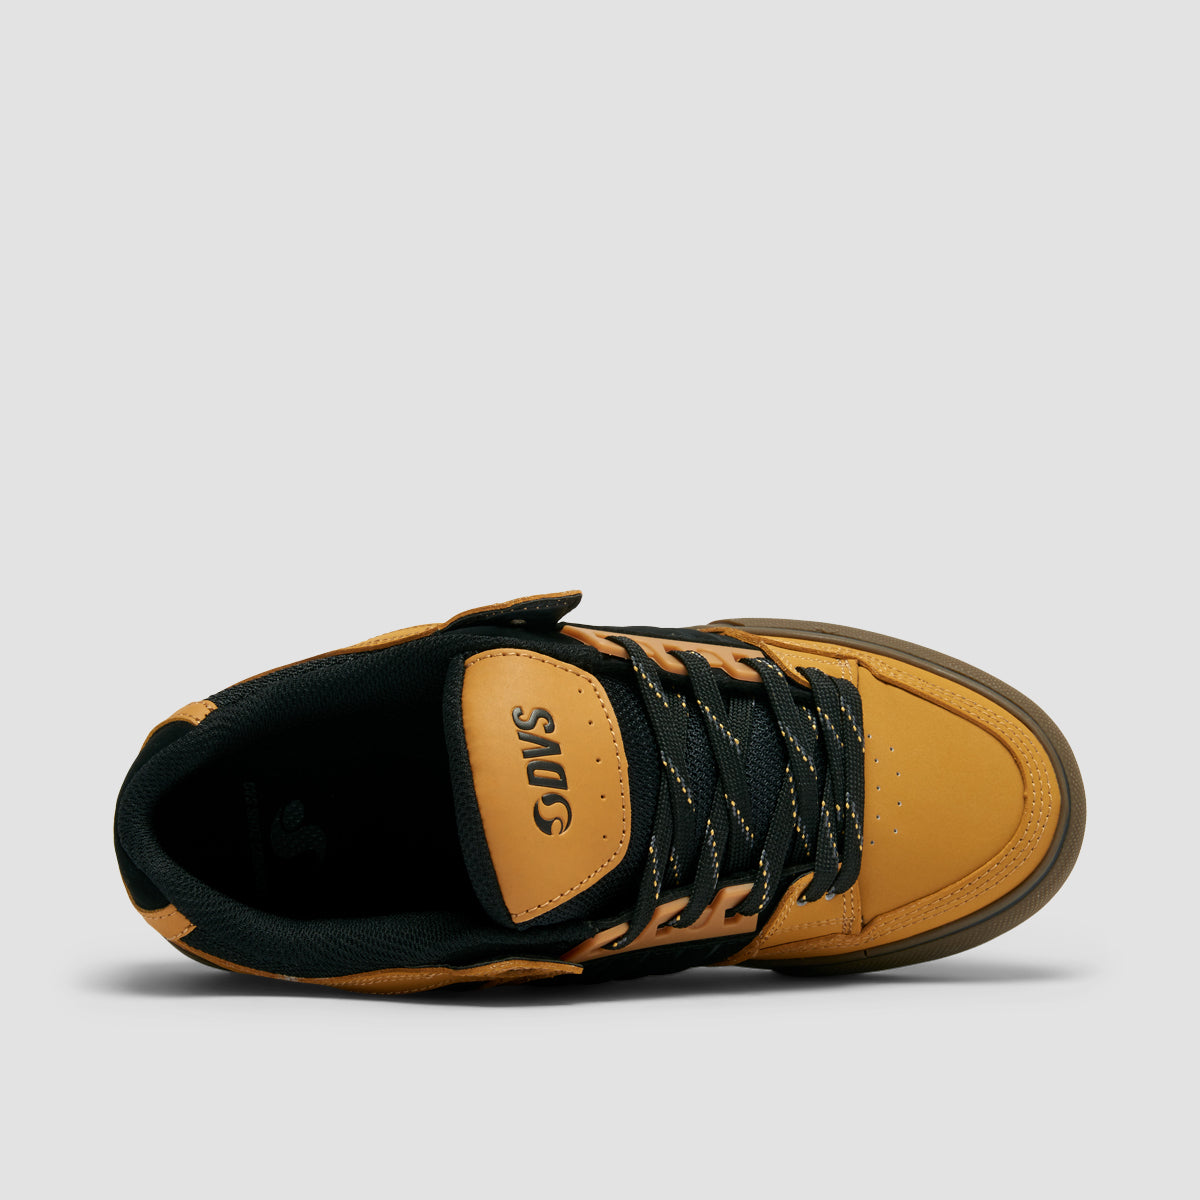 DVS Celsius CT Shoes - Chamois/Black Nubuck